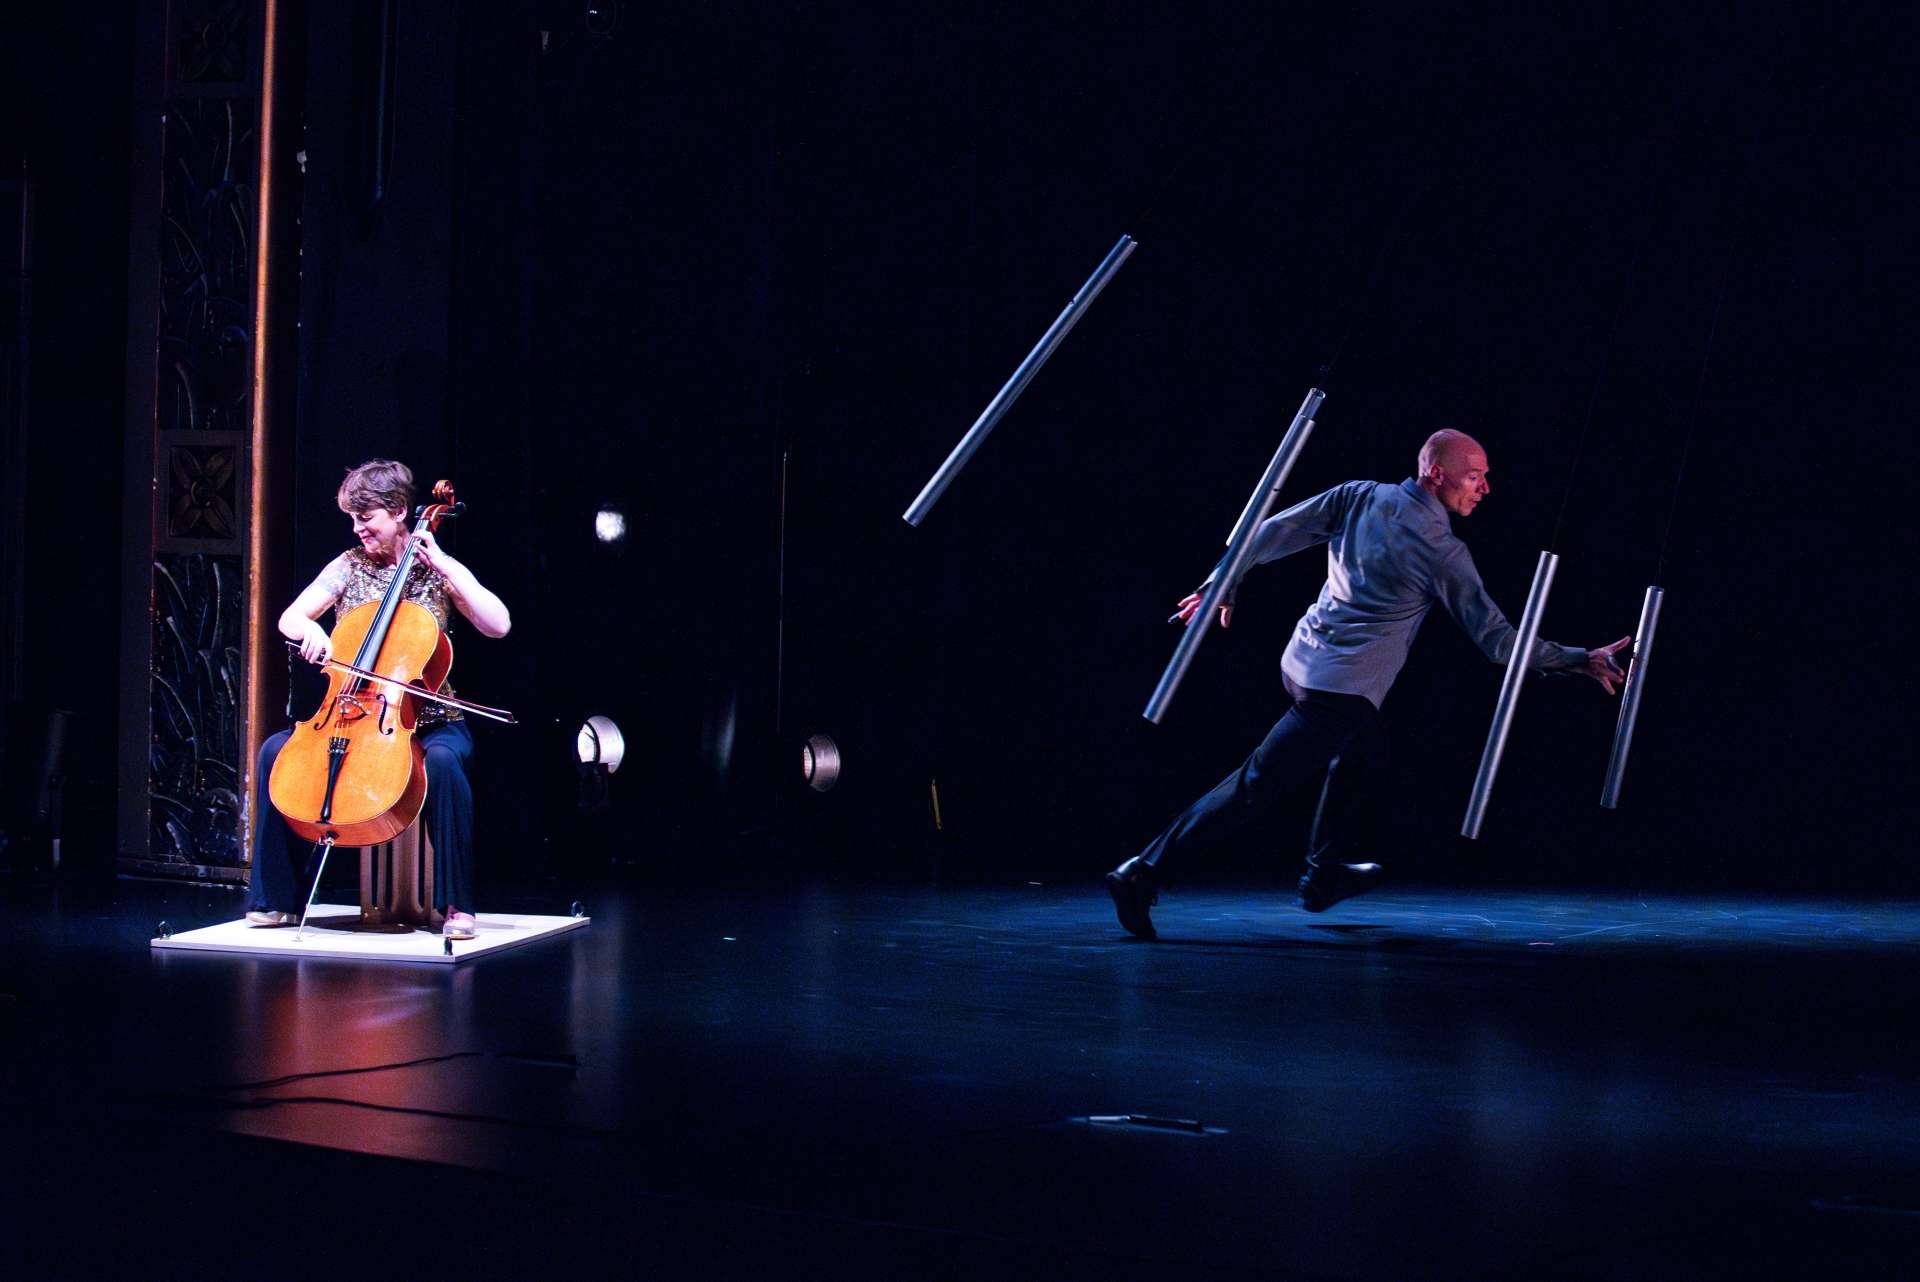 La violoncelliste et l'acrobate sur scène